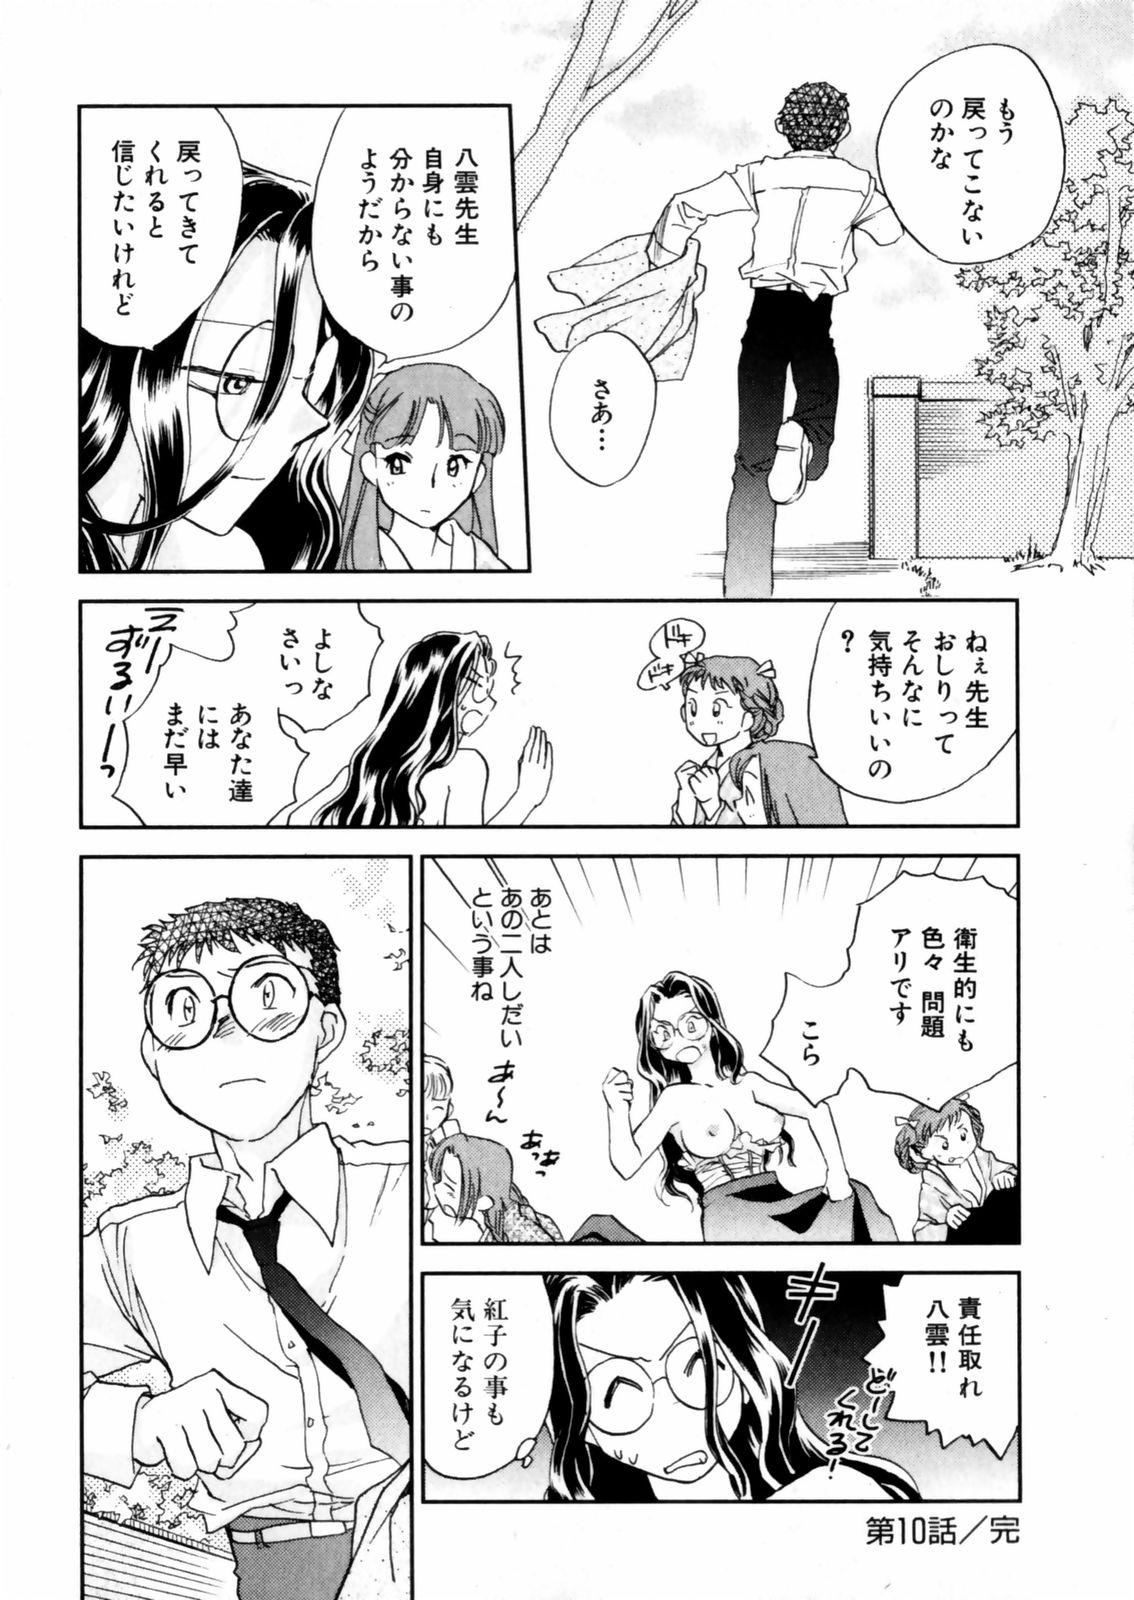 [Okano Ahiru] Hanasake ! Otome Juku (Otome Private Tutoring School) Vol.2 85